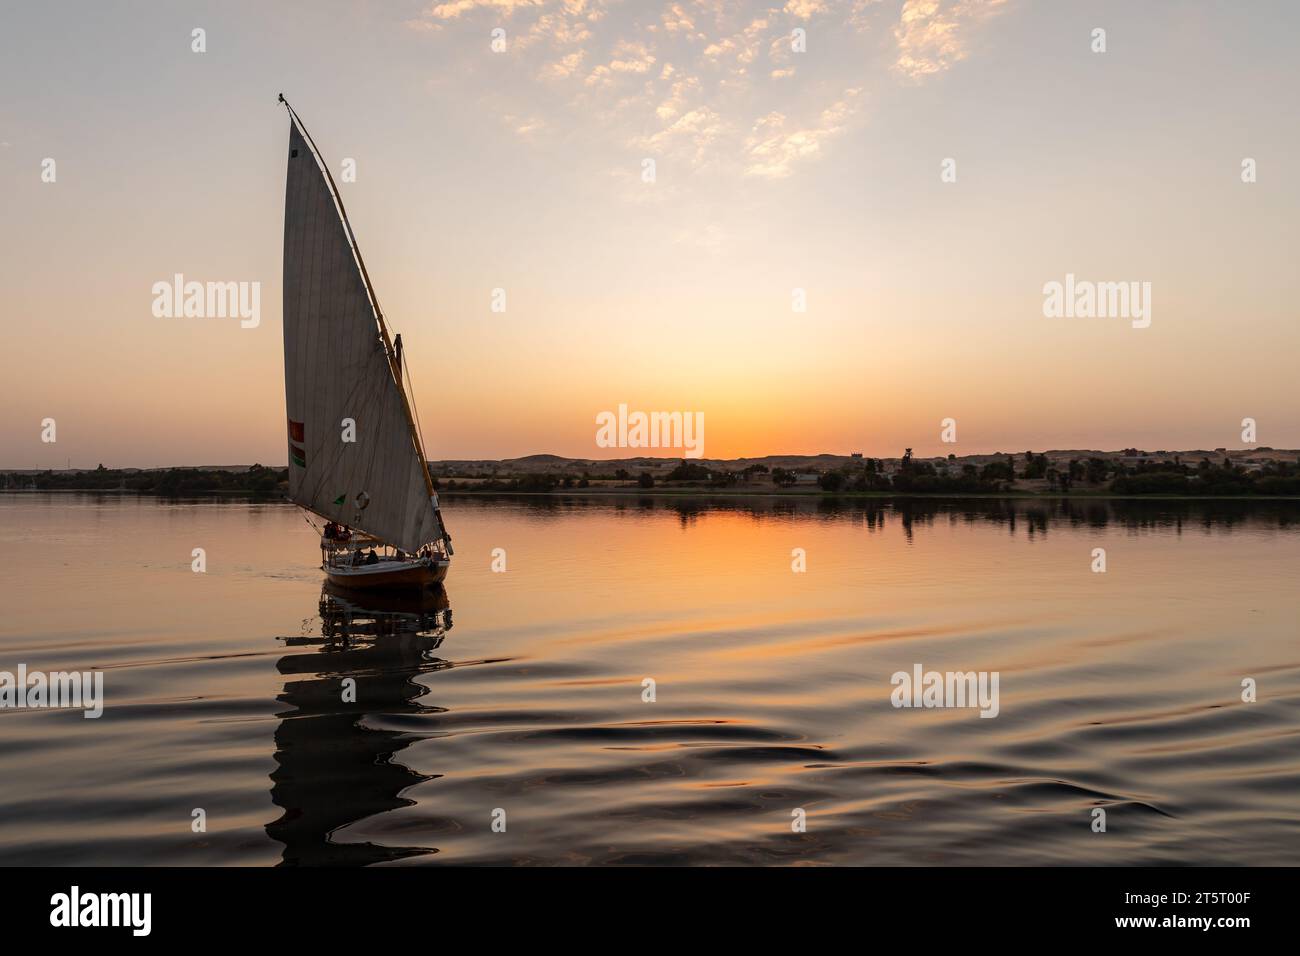 Bateau à voile égyptien de style traditionnel felouque descend le fleuve au coucher du soleil sur le Nil Banque D'Images